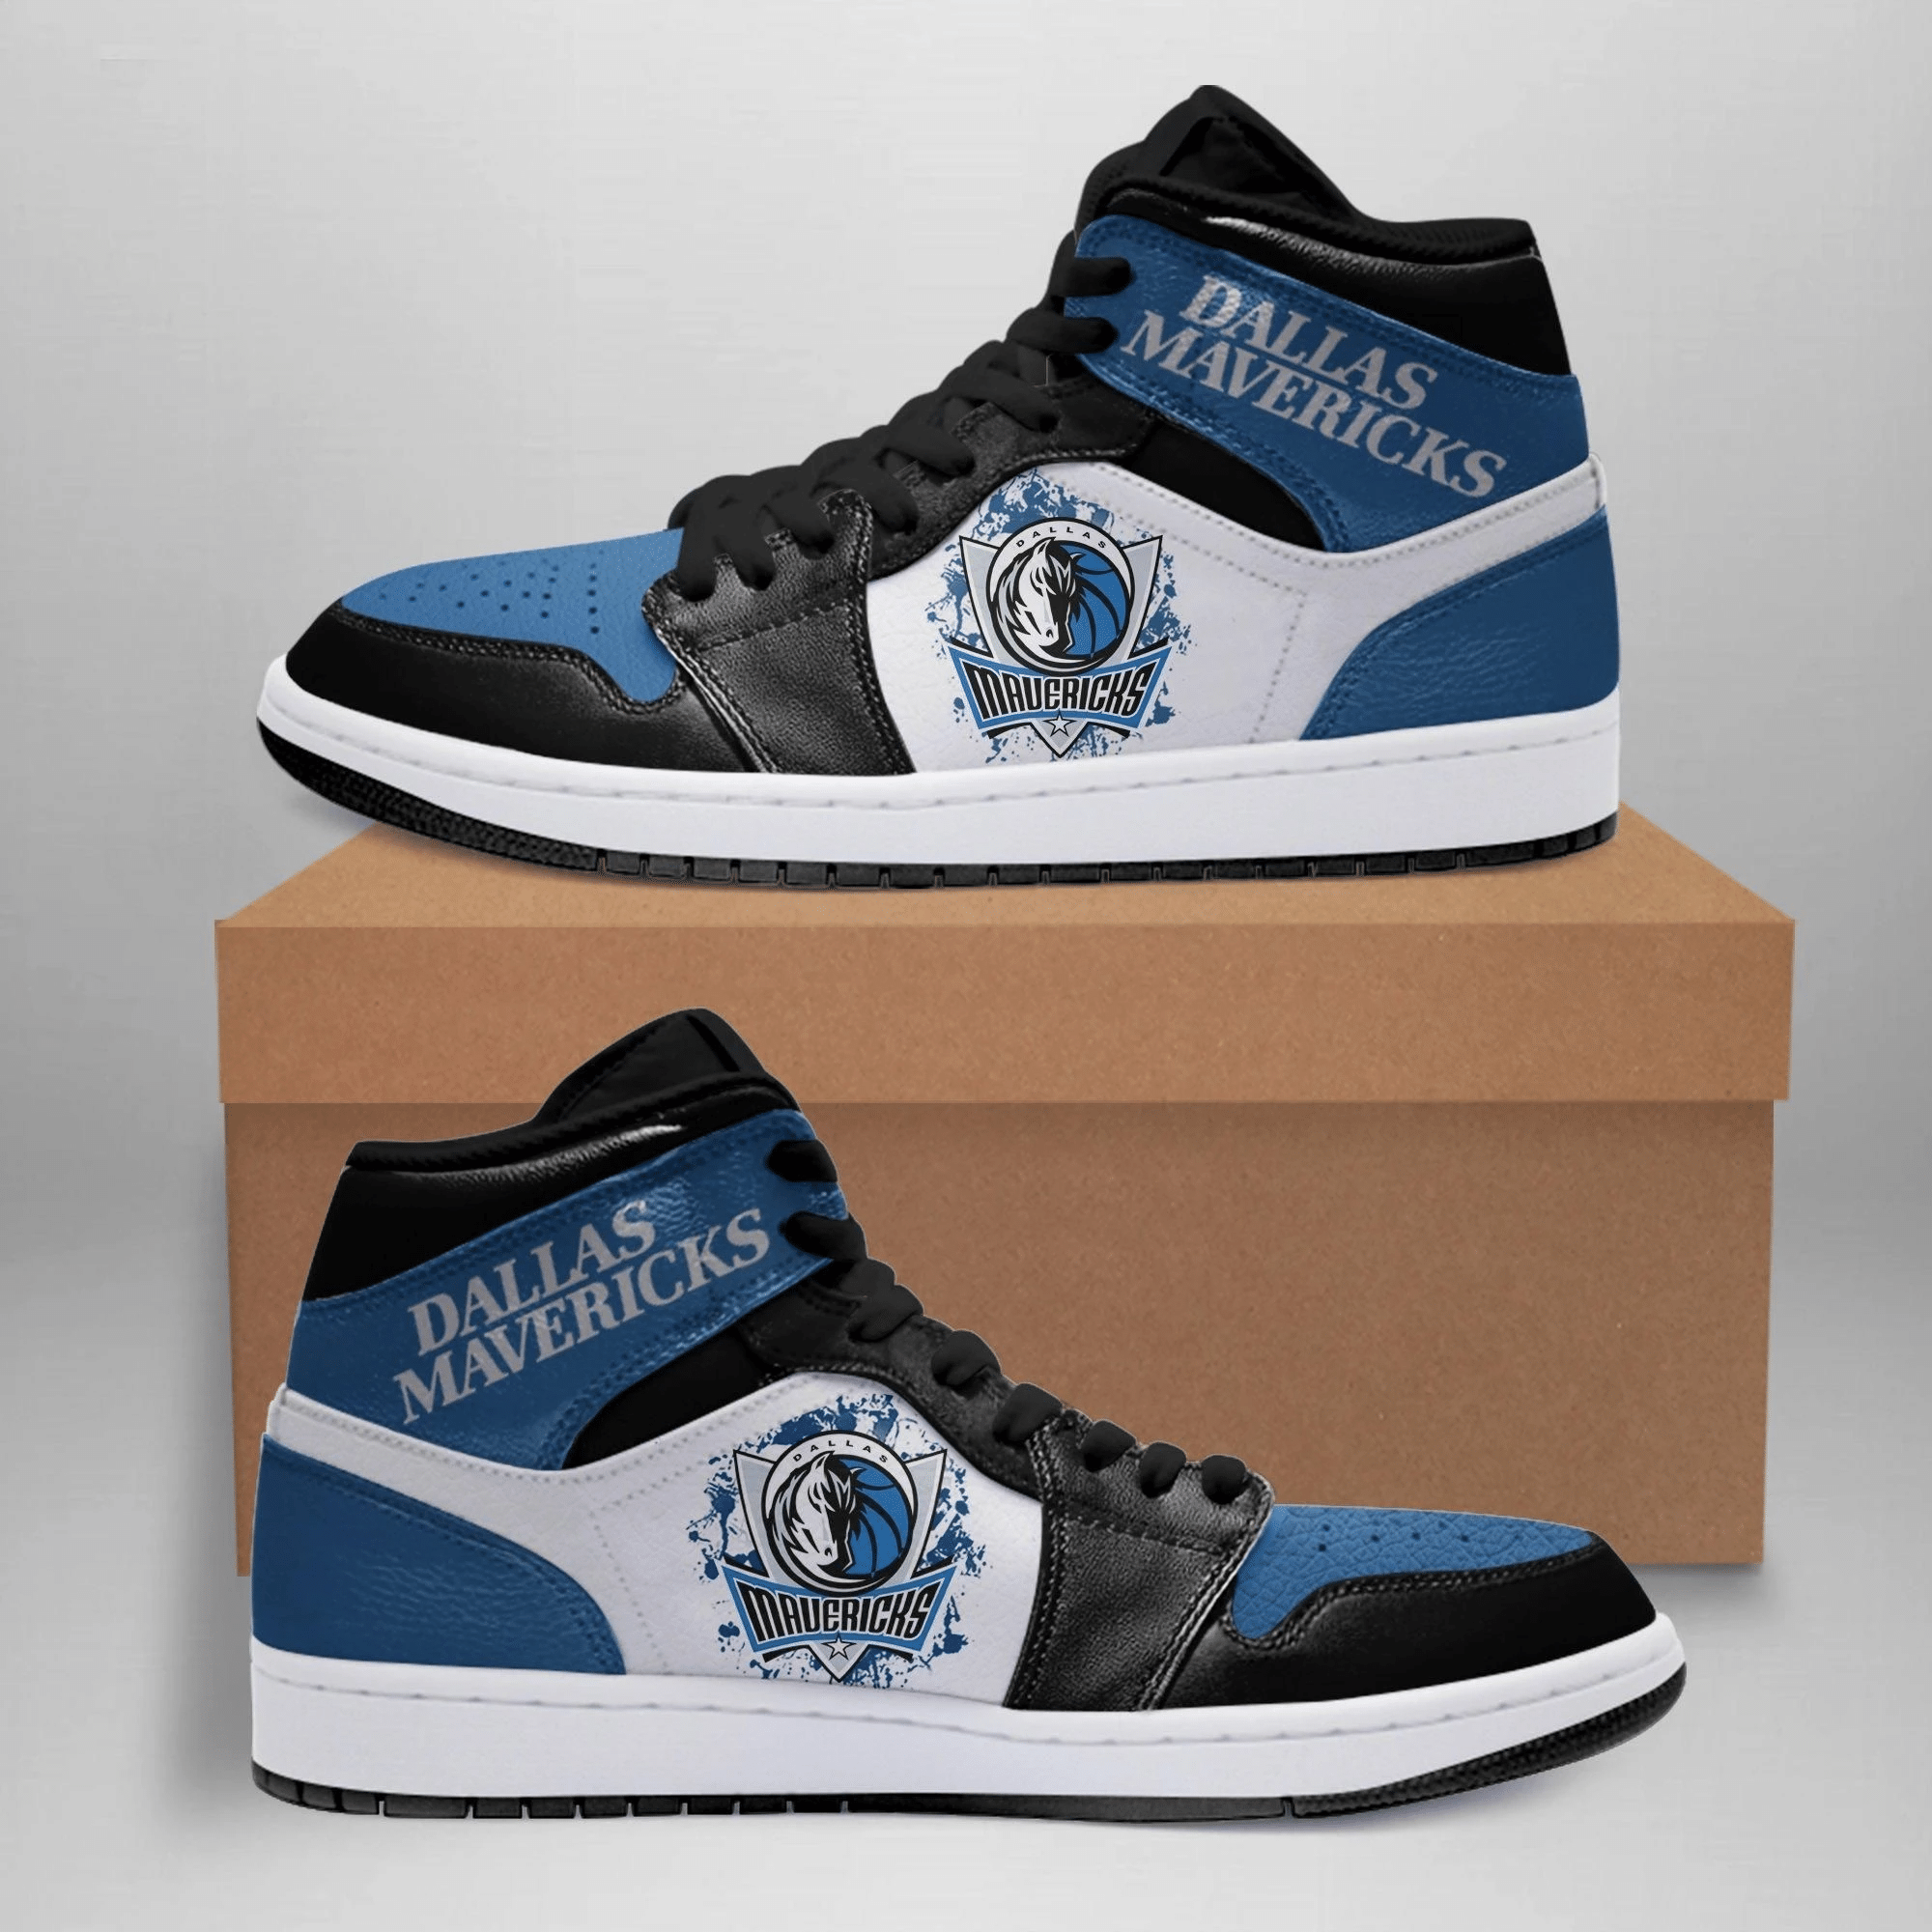 Dallas Mavericks Air Jordan Shoes Sport Sneakers